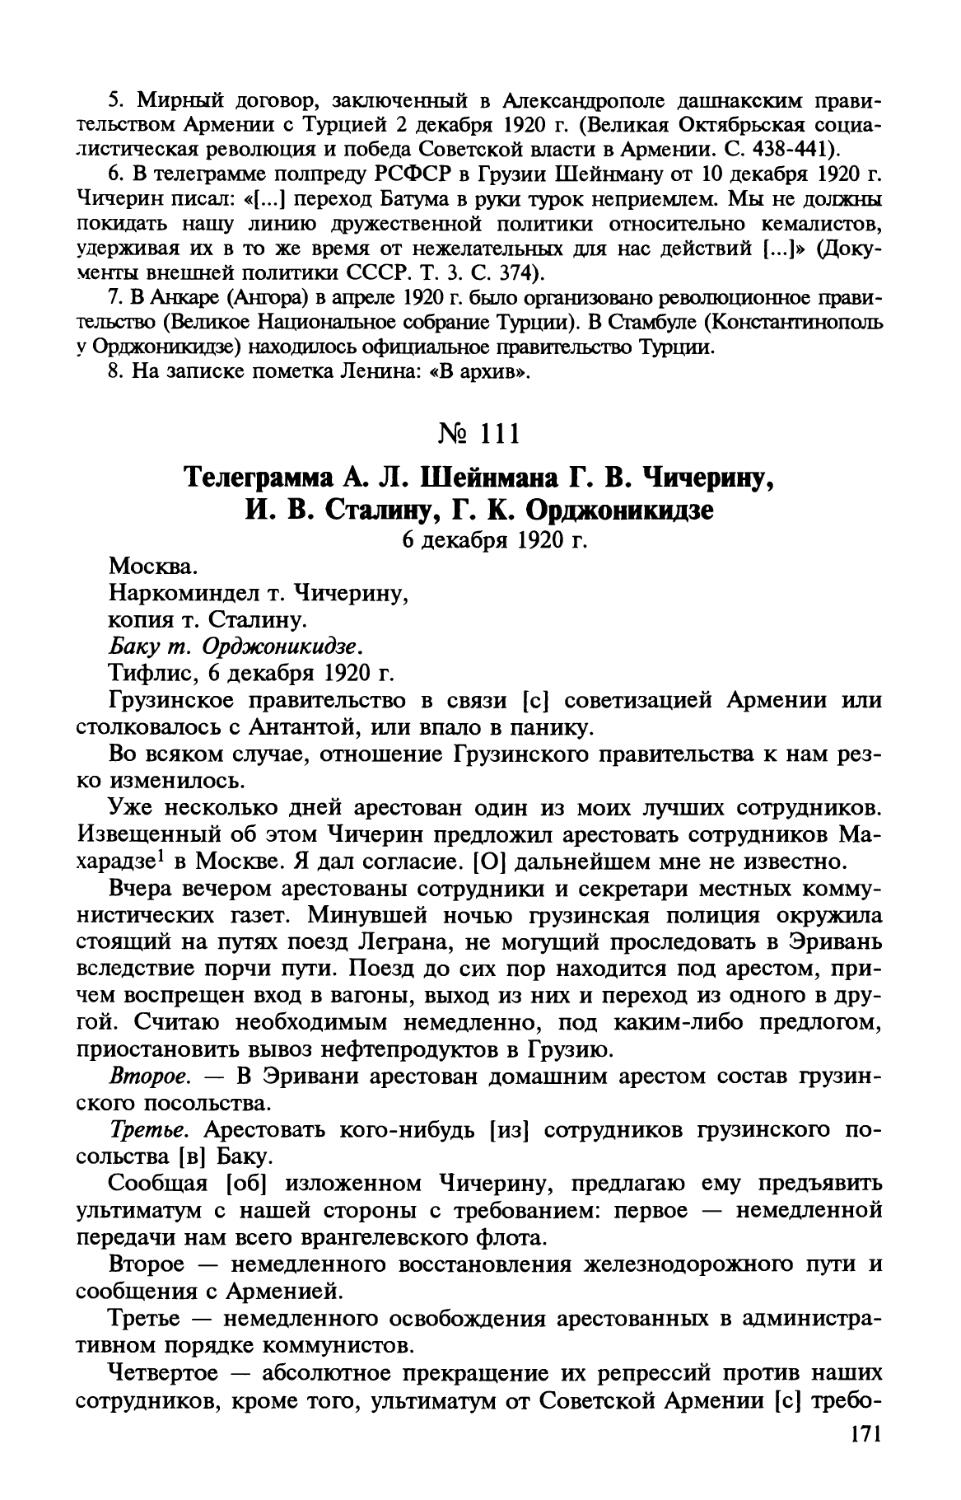 111. Телеграмма A. Л. Шейнмана Г. В. Чичерину, И. В. Сталину, Г. К. Орджоникидзе. 6 декабря 1920 г.